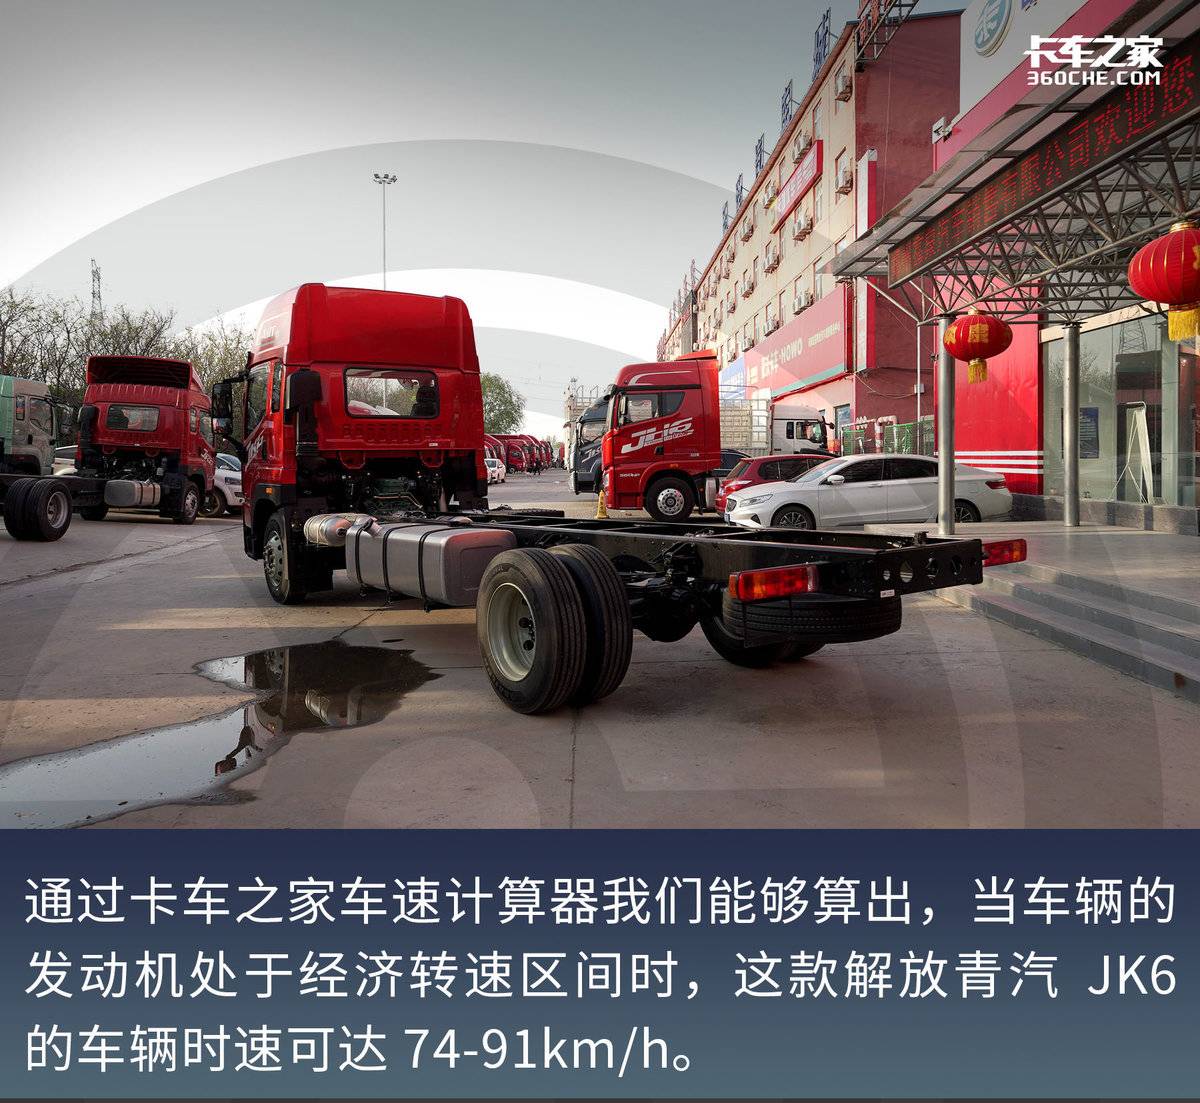 高顶双卧超宽卧铺搭配自动挡 260马力解放青汽JK6仅售18万6